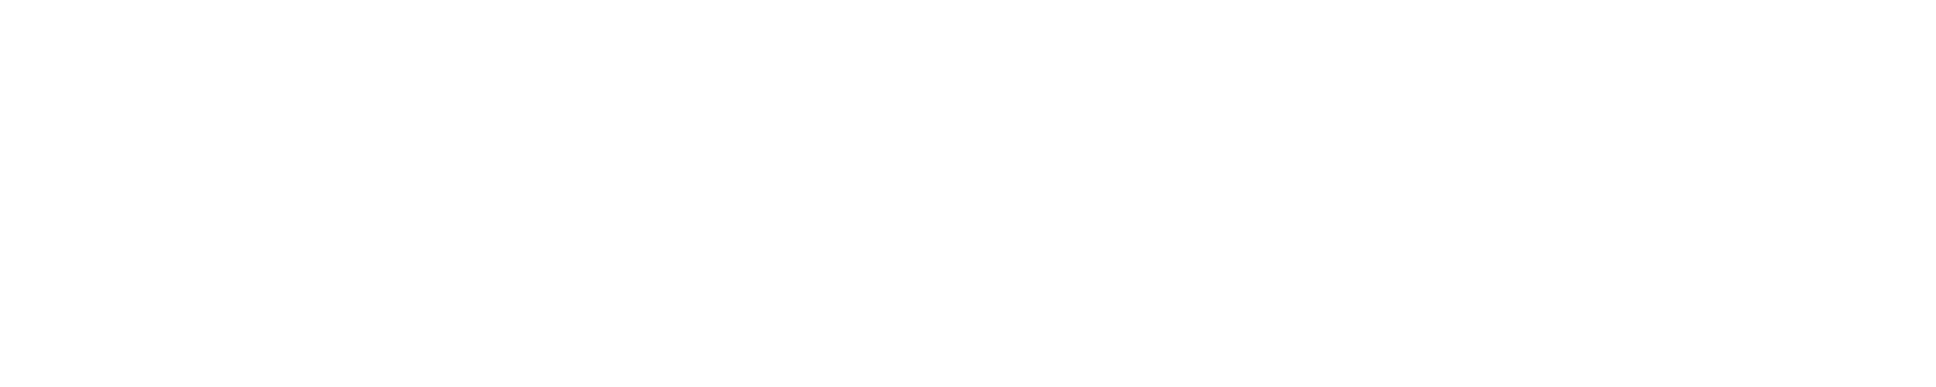 Ezkurdia - Zabaleta